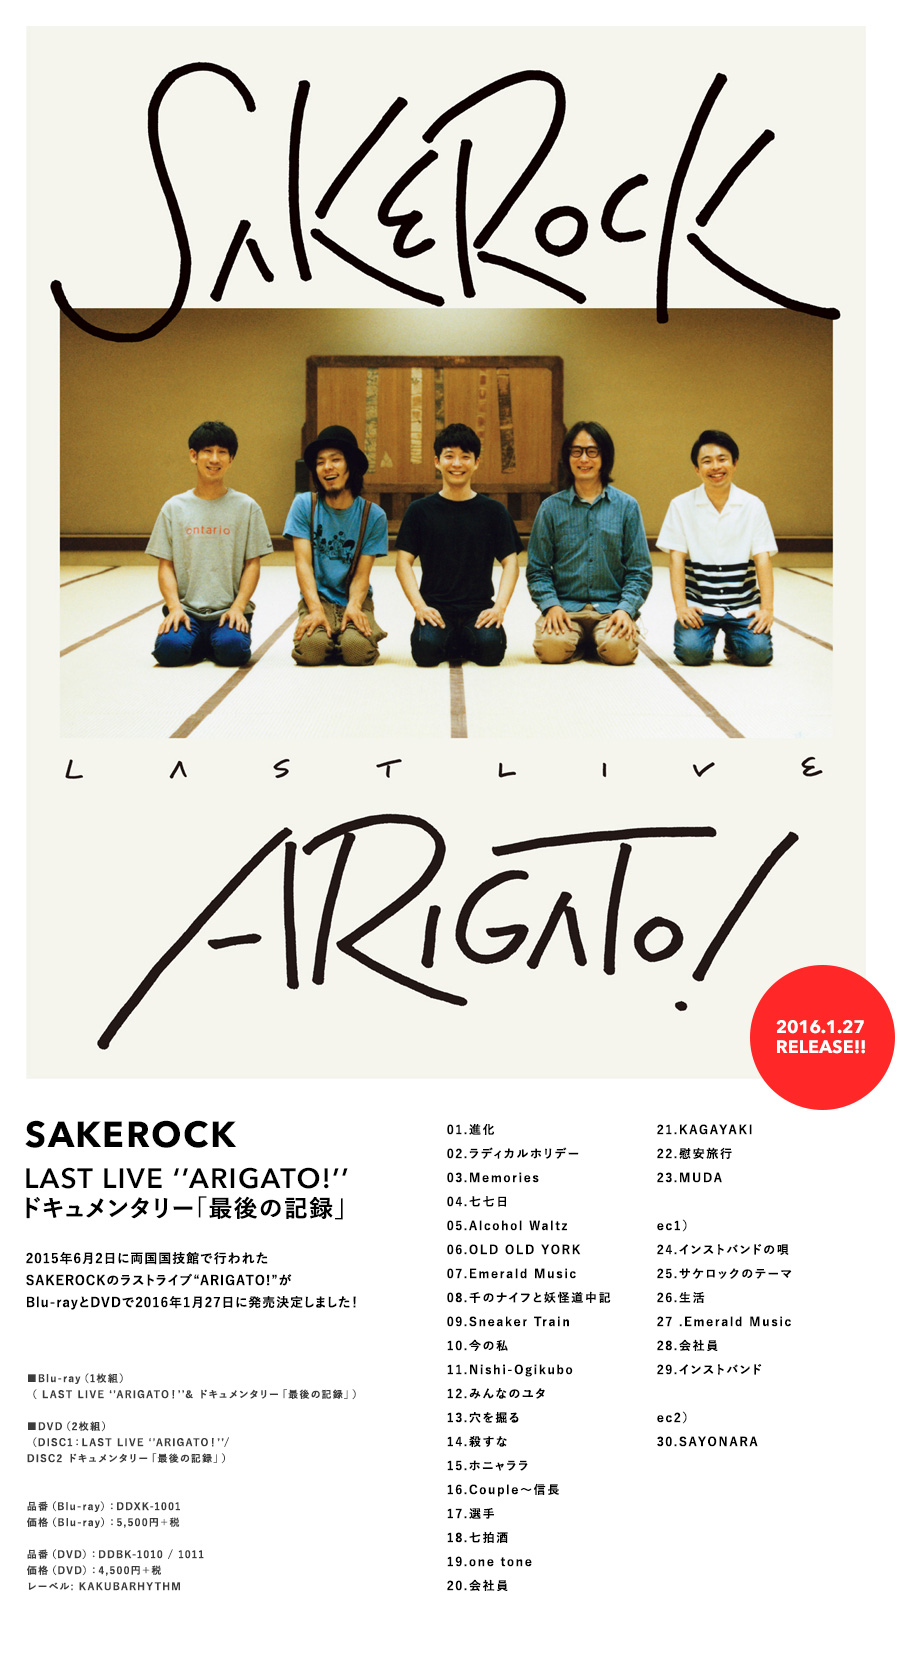 SAKEROCK LAST LIVE ‘’ARIGATO!’’ ドキュメンタリー「最後の記録」